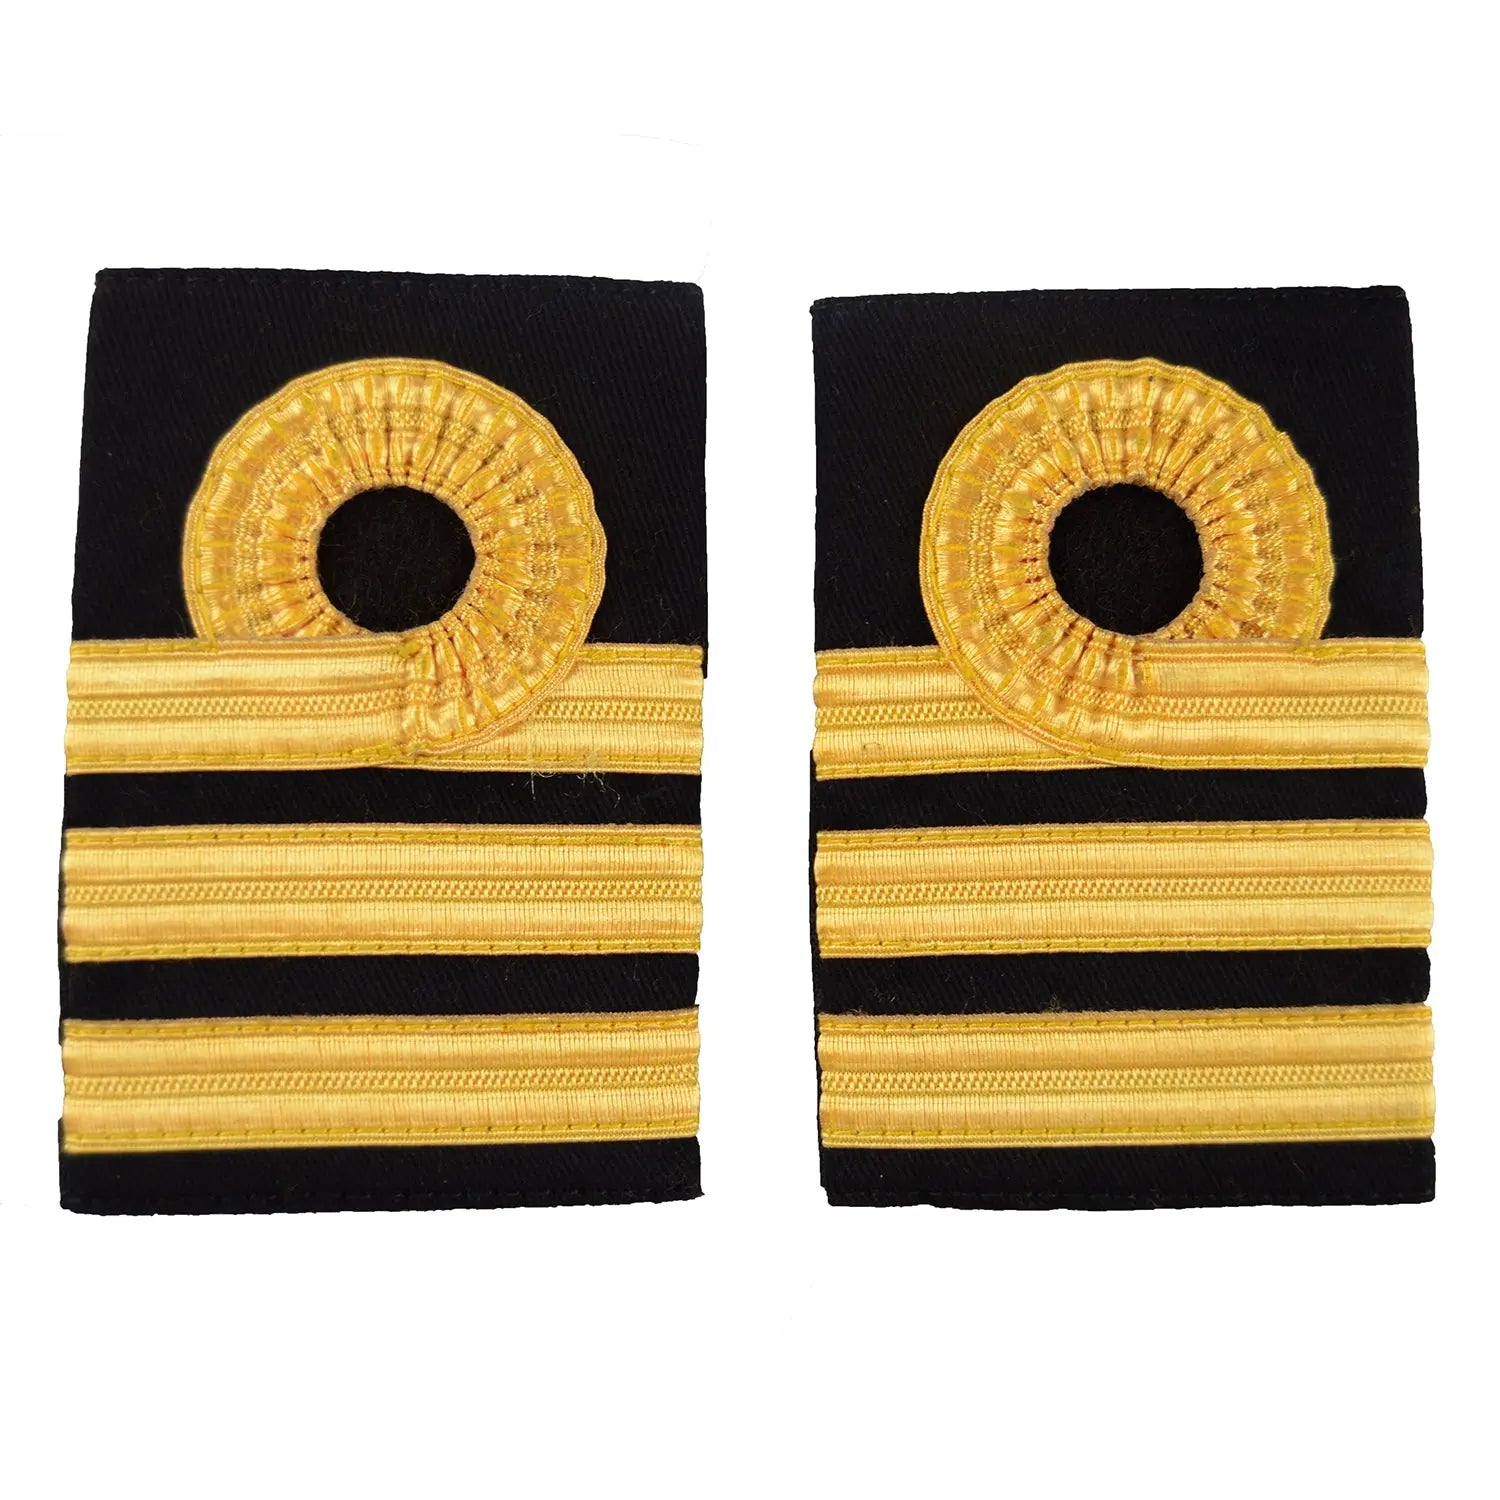 Commander (COM) Slider Epaulette Royal Navy Badge wyedean